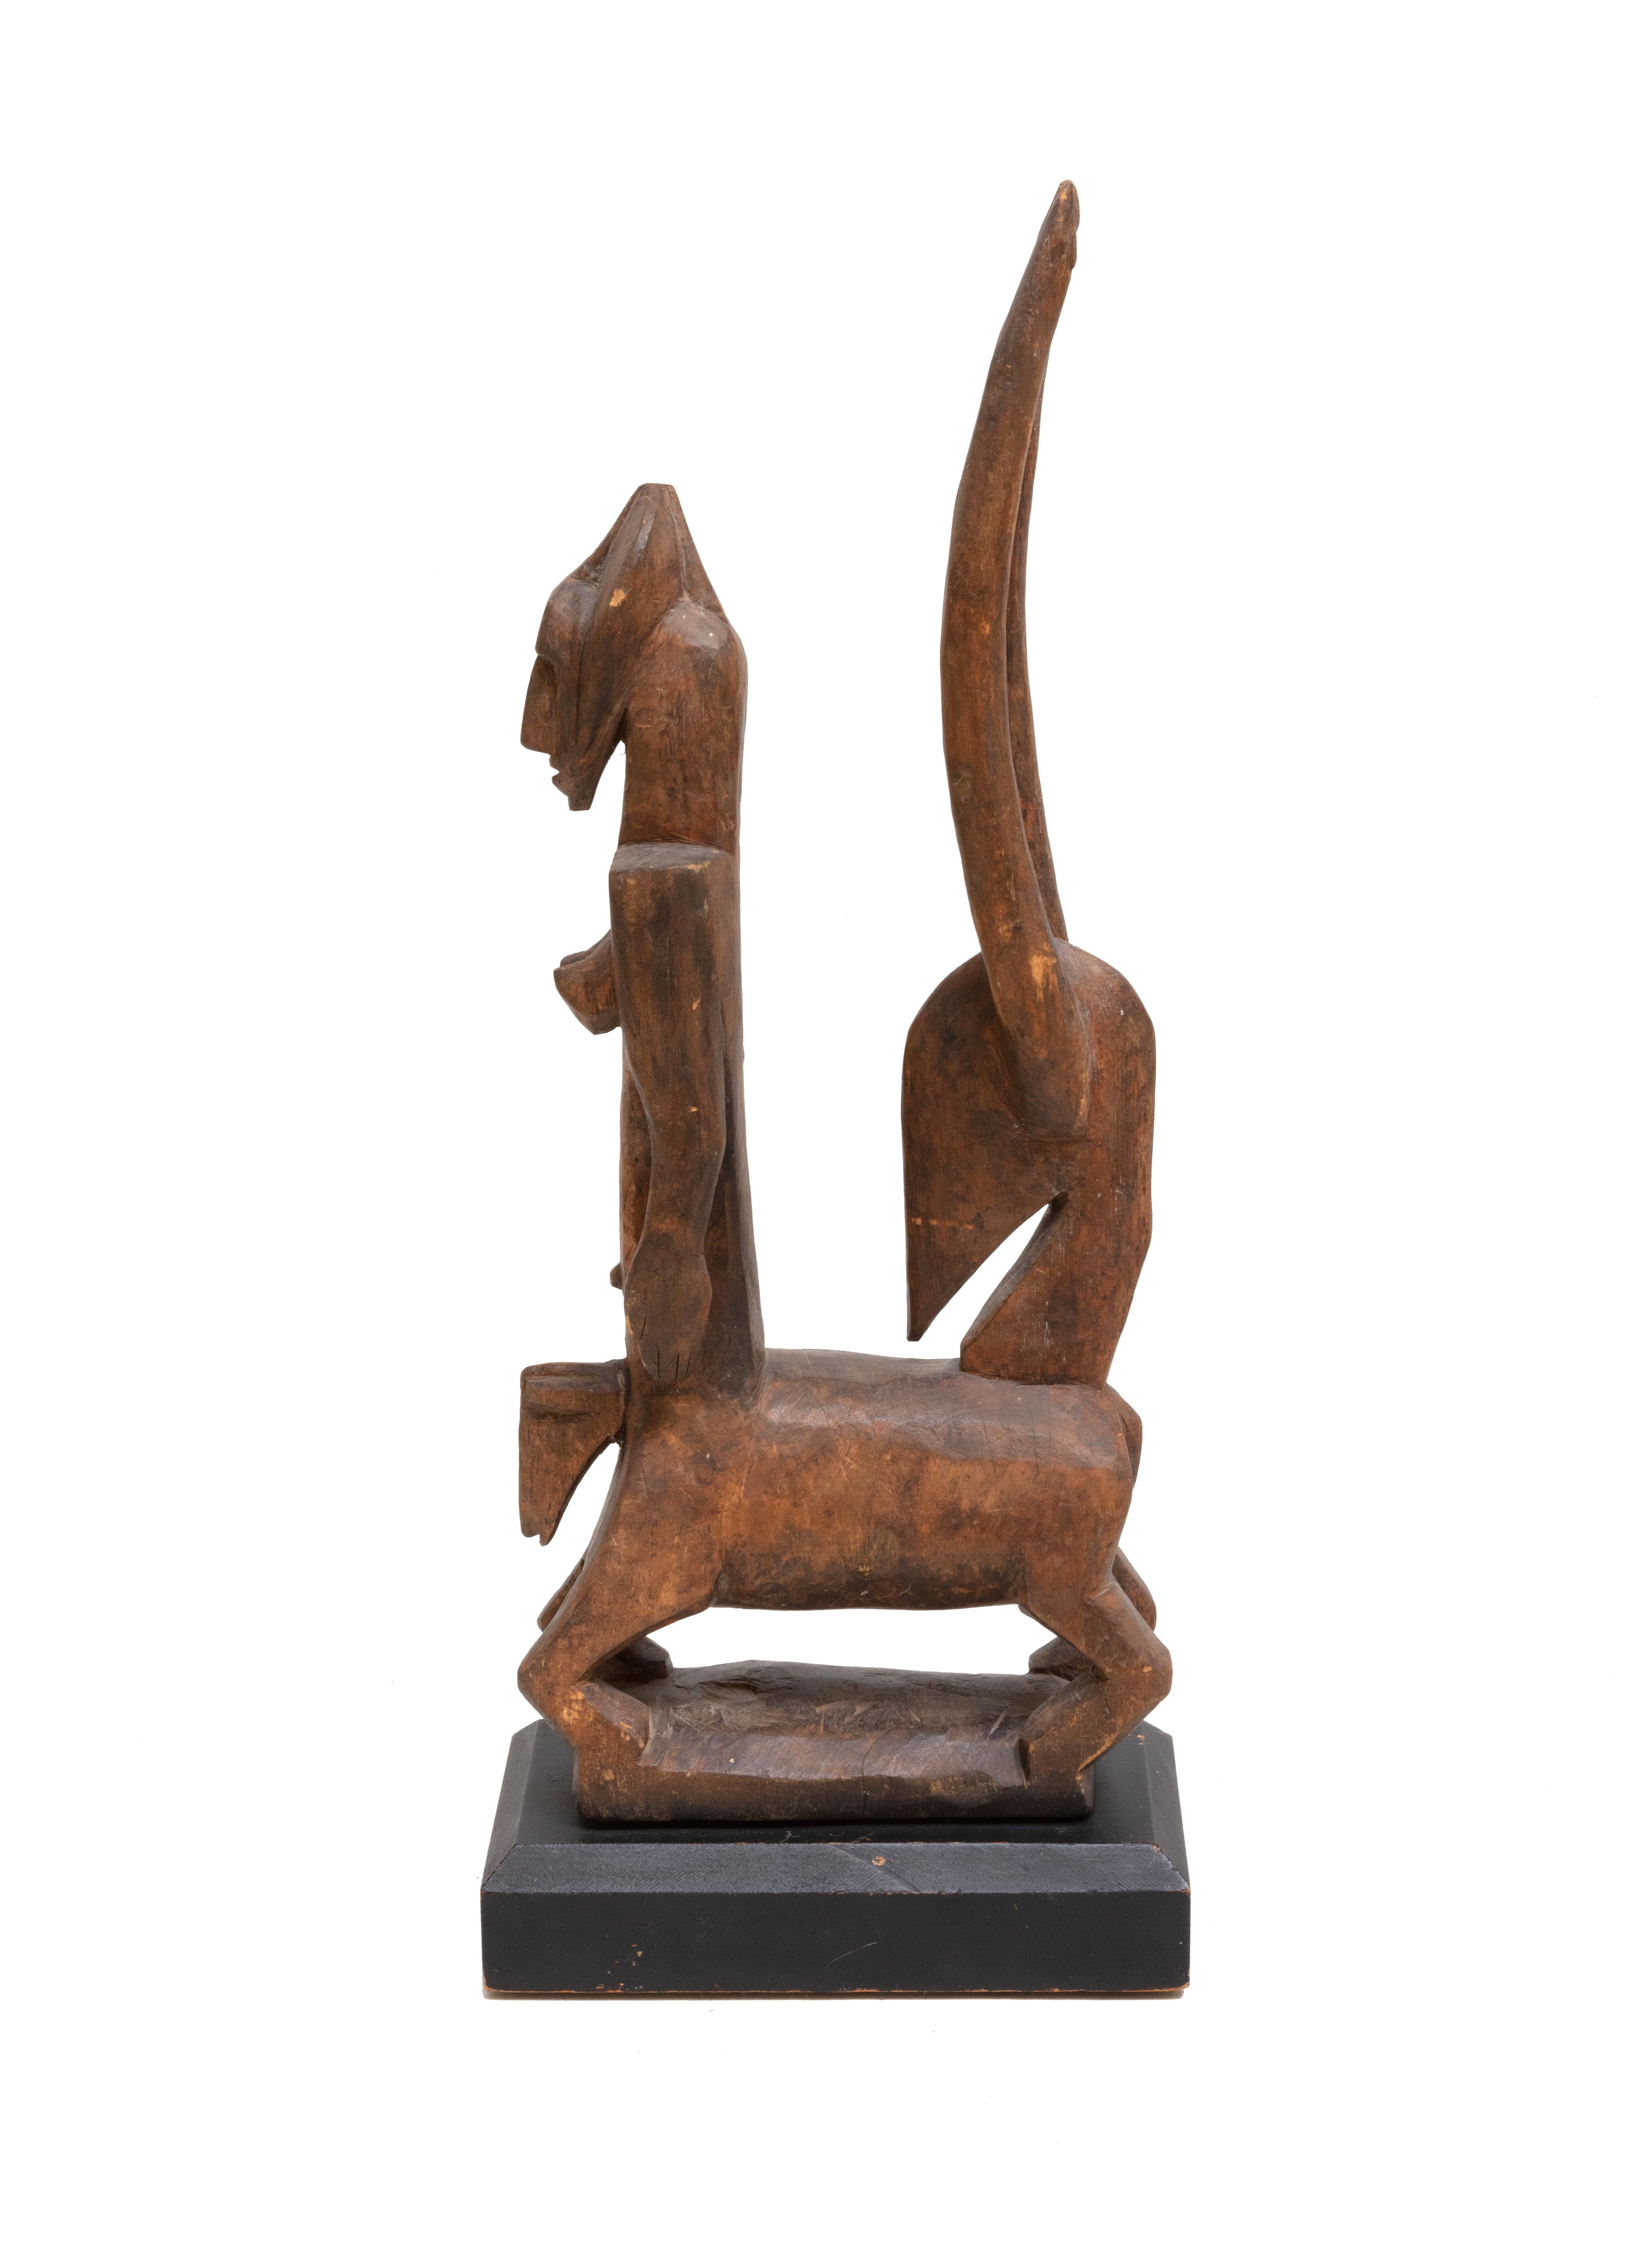 "Reine du Bambara, Rép. Mali, « Wood created in Africa in c. 1940